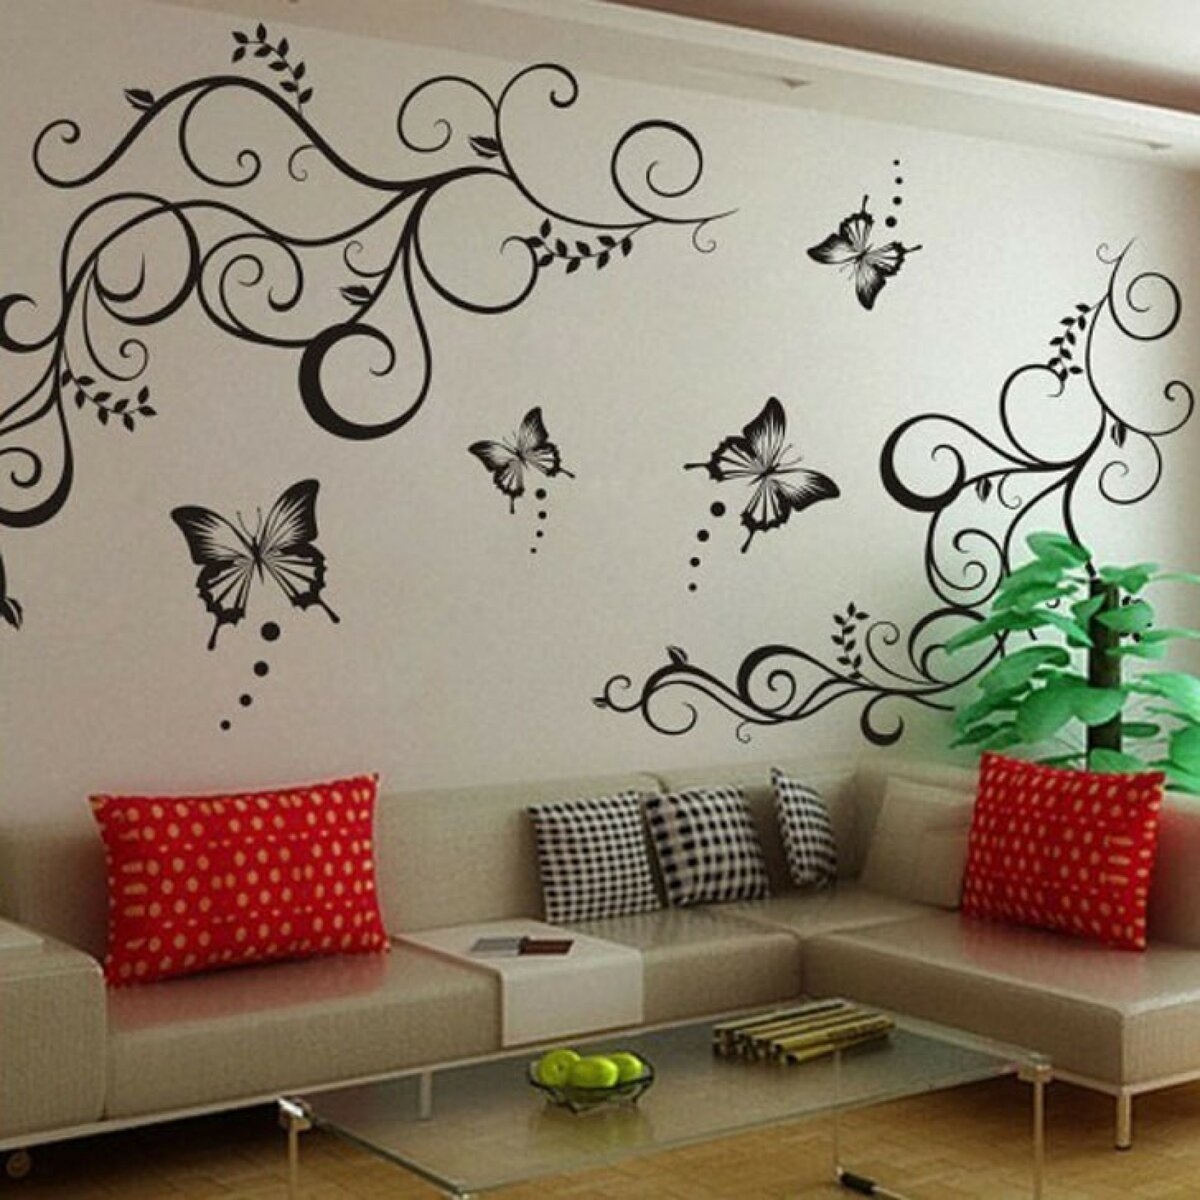 Как покрасить стену через трафарет - декор интерьера своими руками